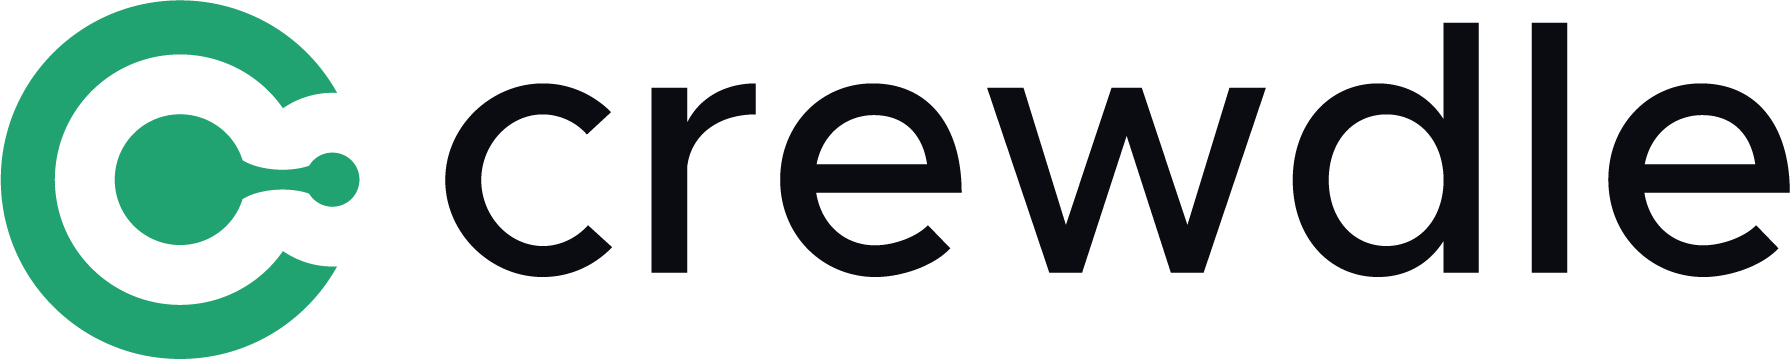 Drewdle Logo